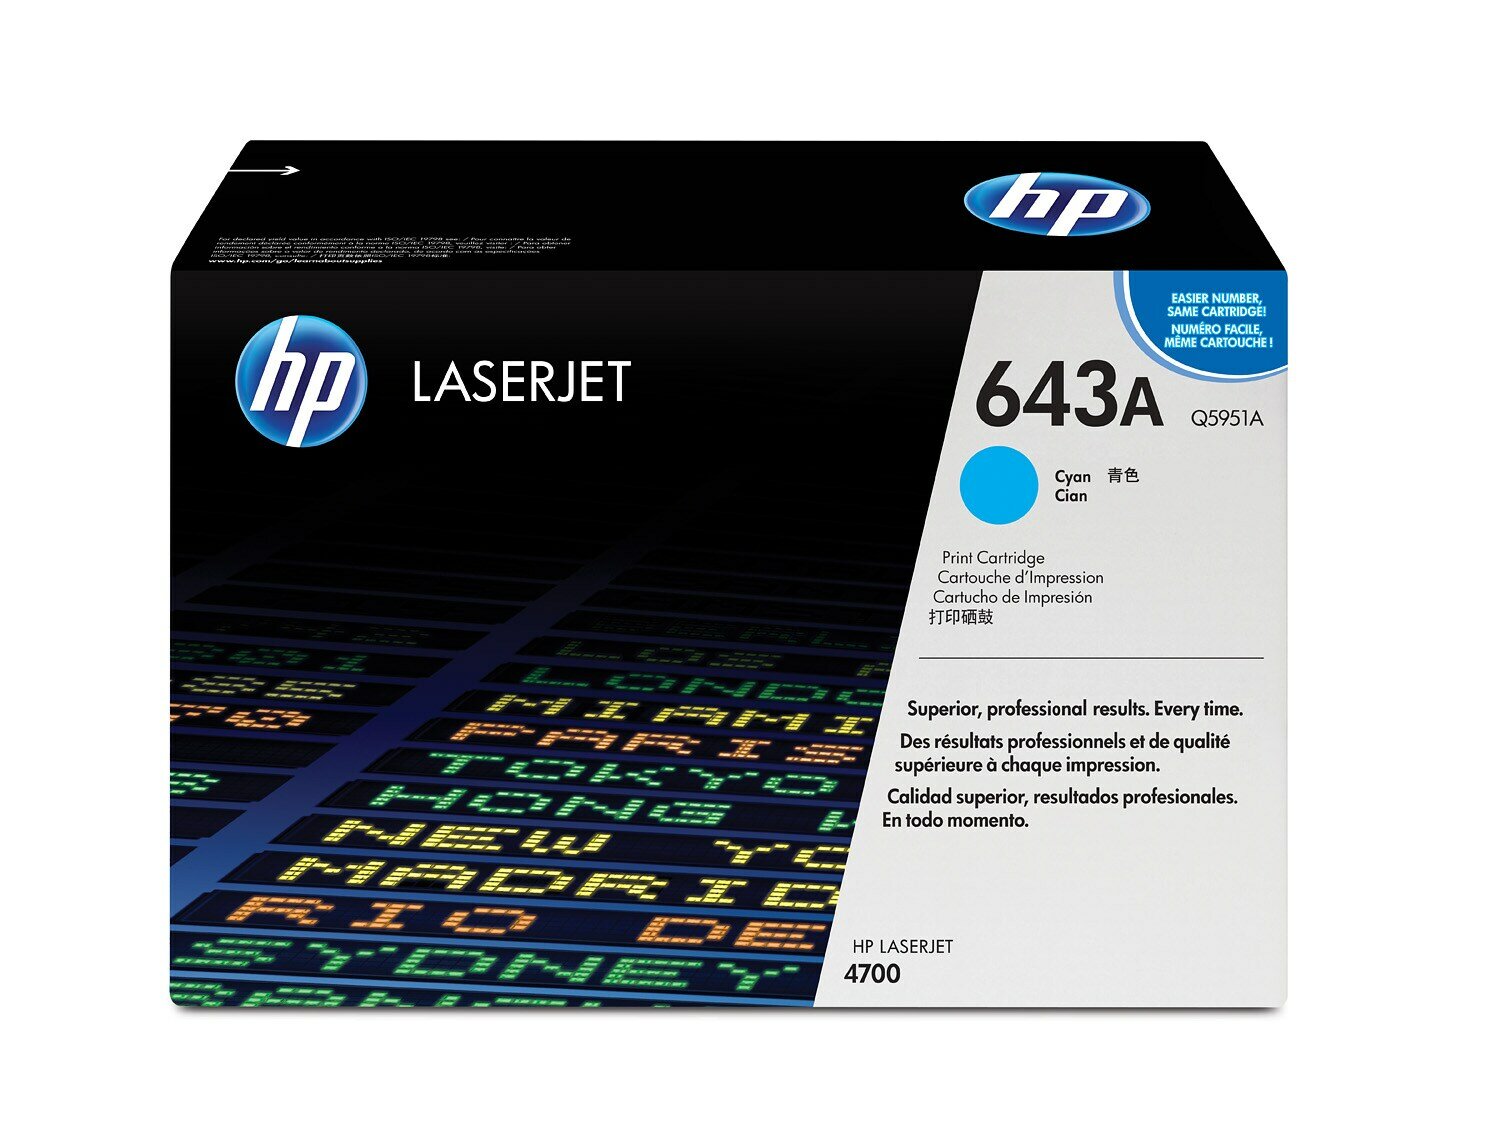 Картридж для печати HP Картридж HP 643A Q5951A вид печати лазерный, цвет Голубой, емкость